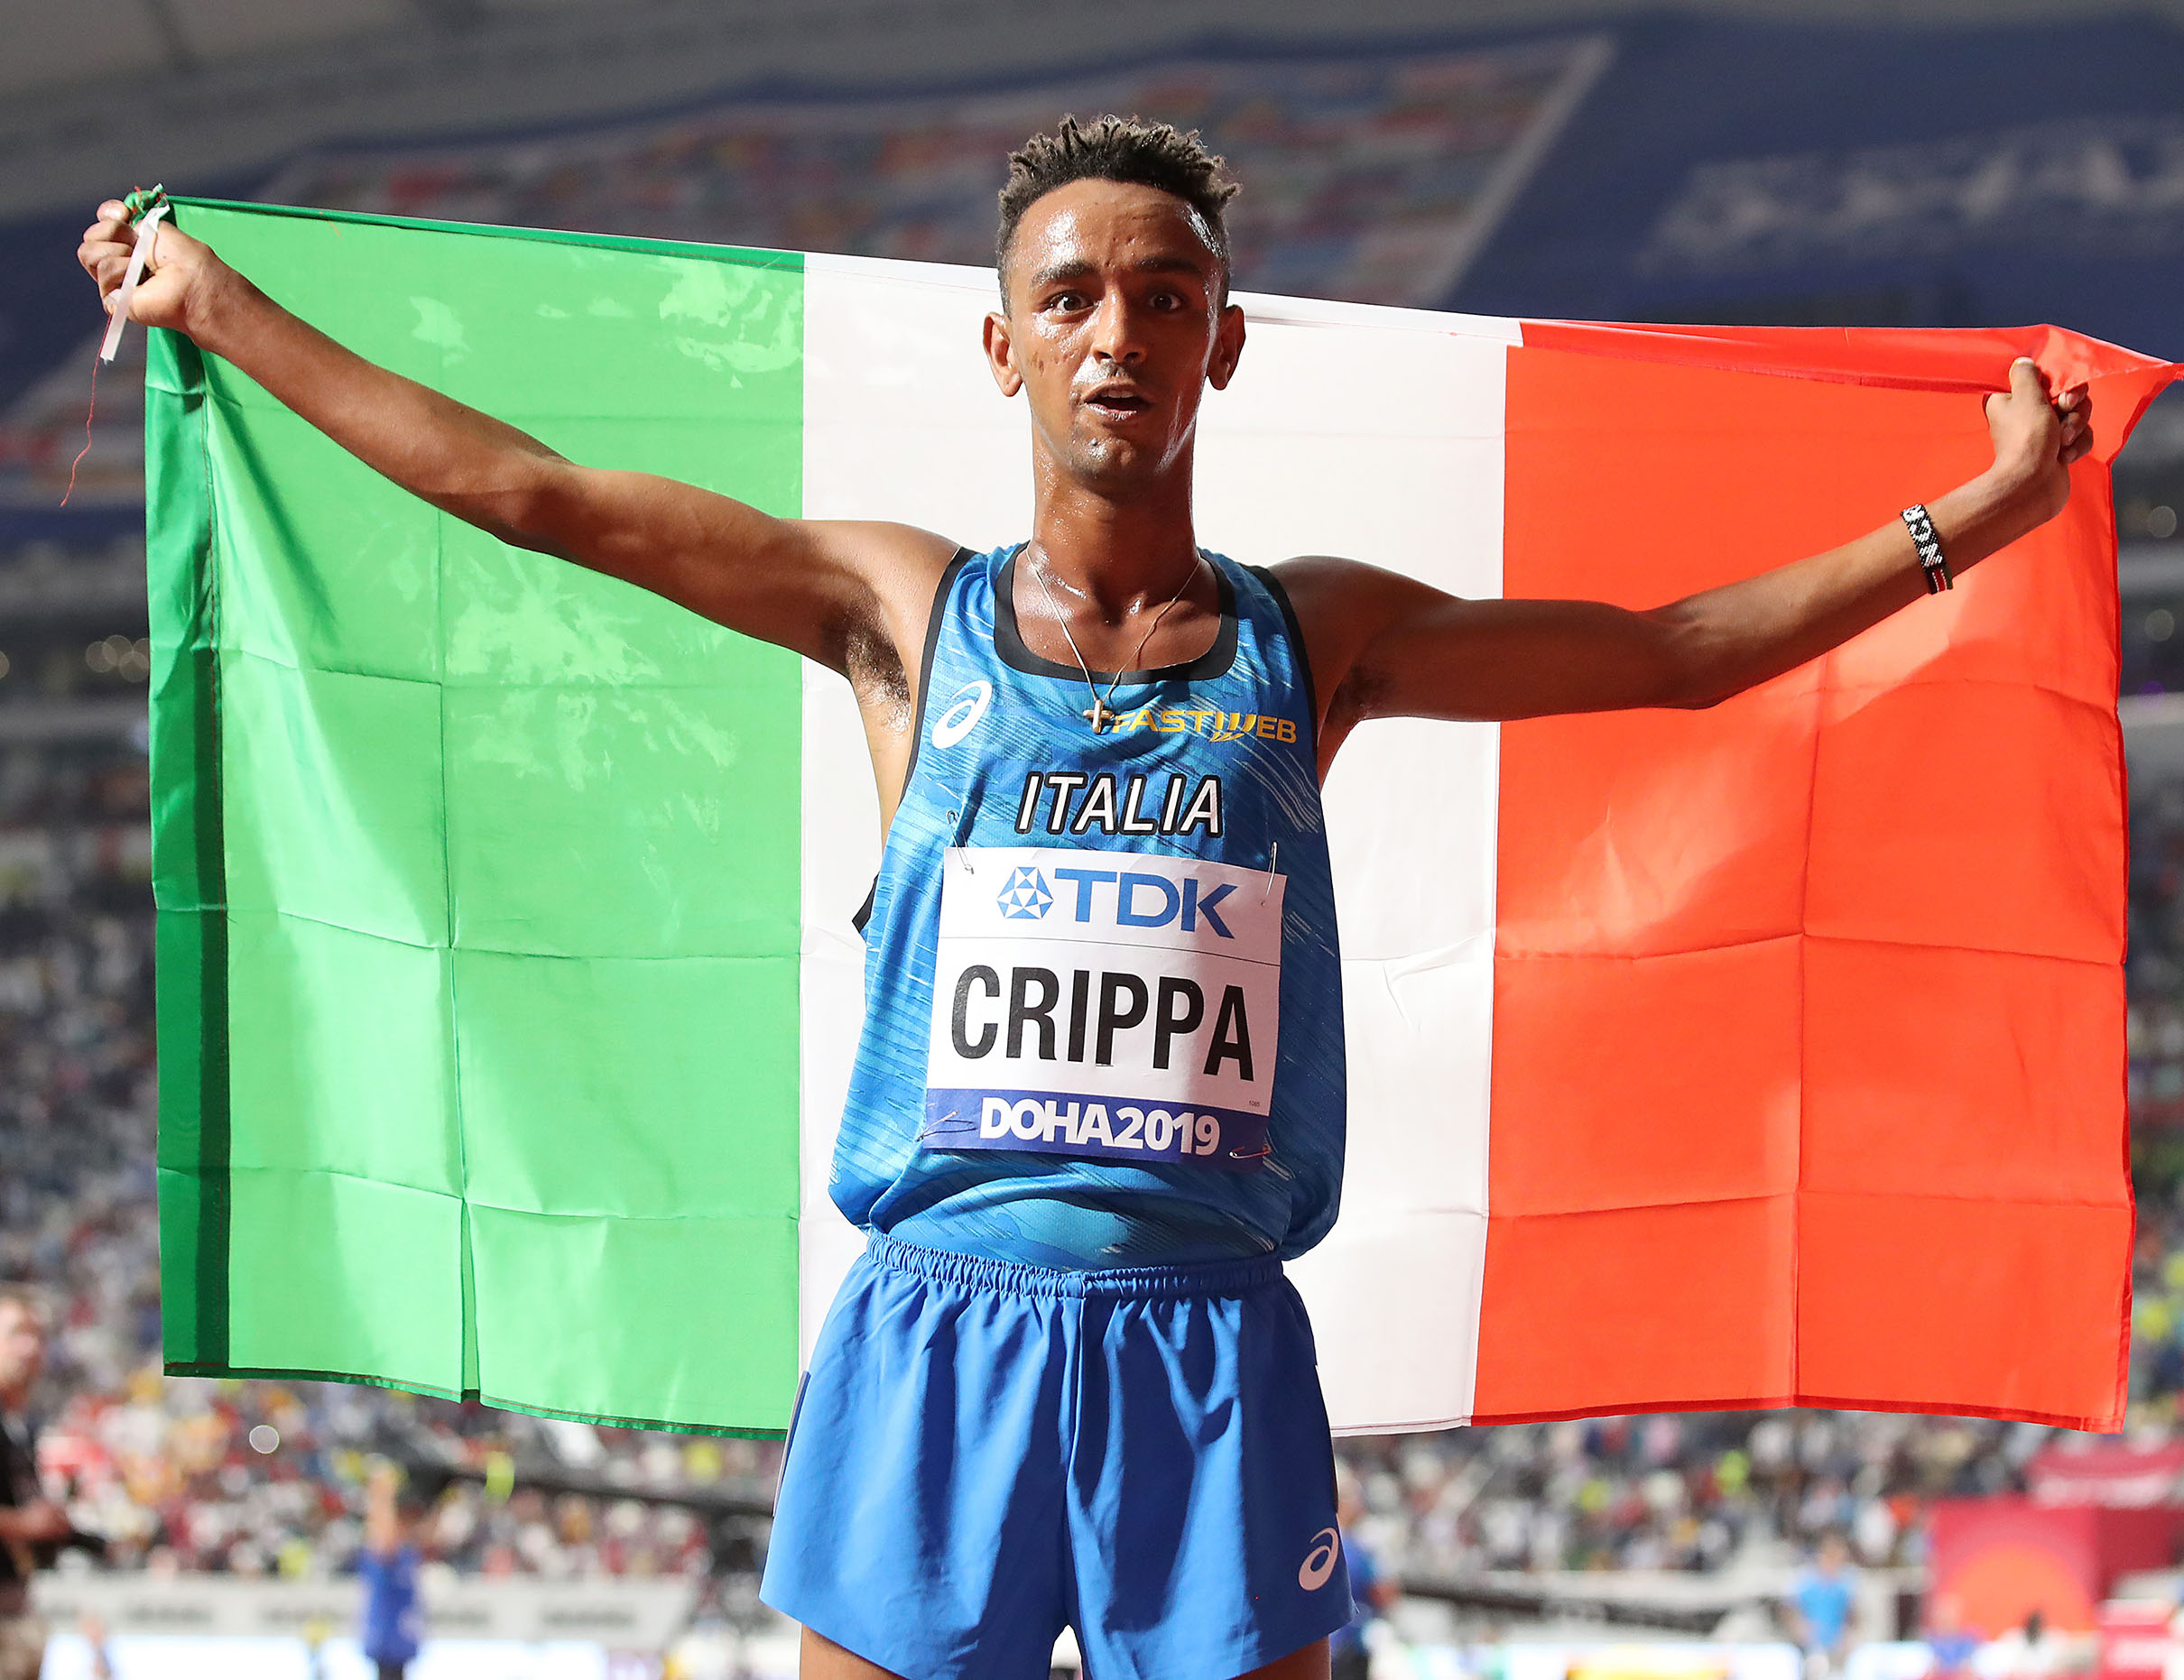 Yeman Crippa vince la Coppa Europa dei 10.000 metri